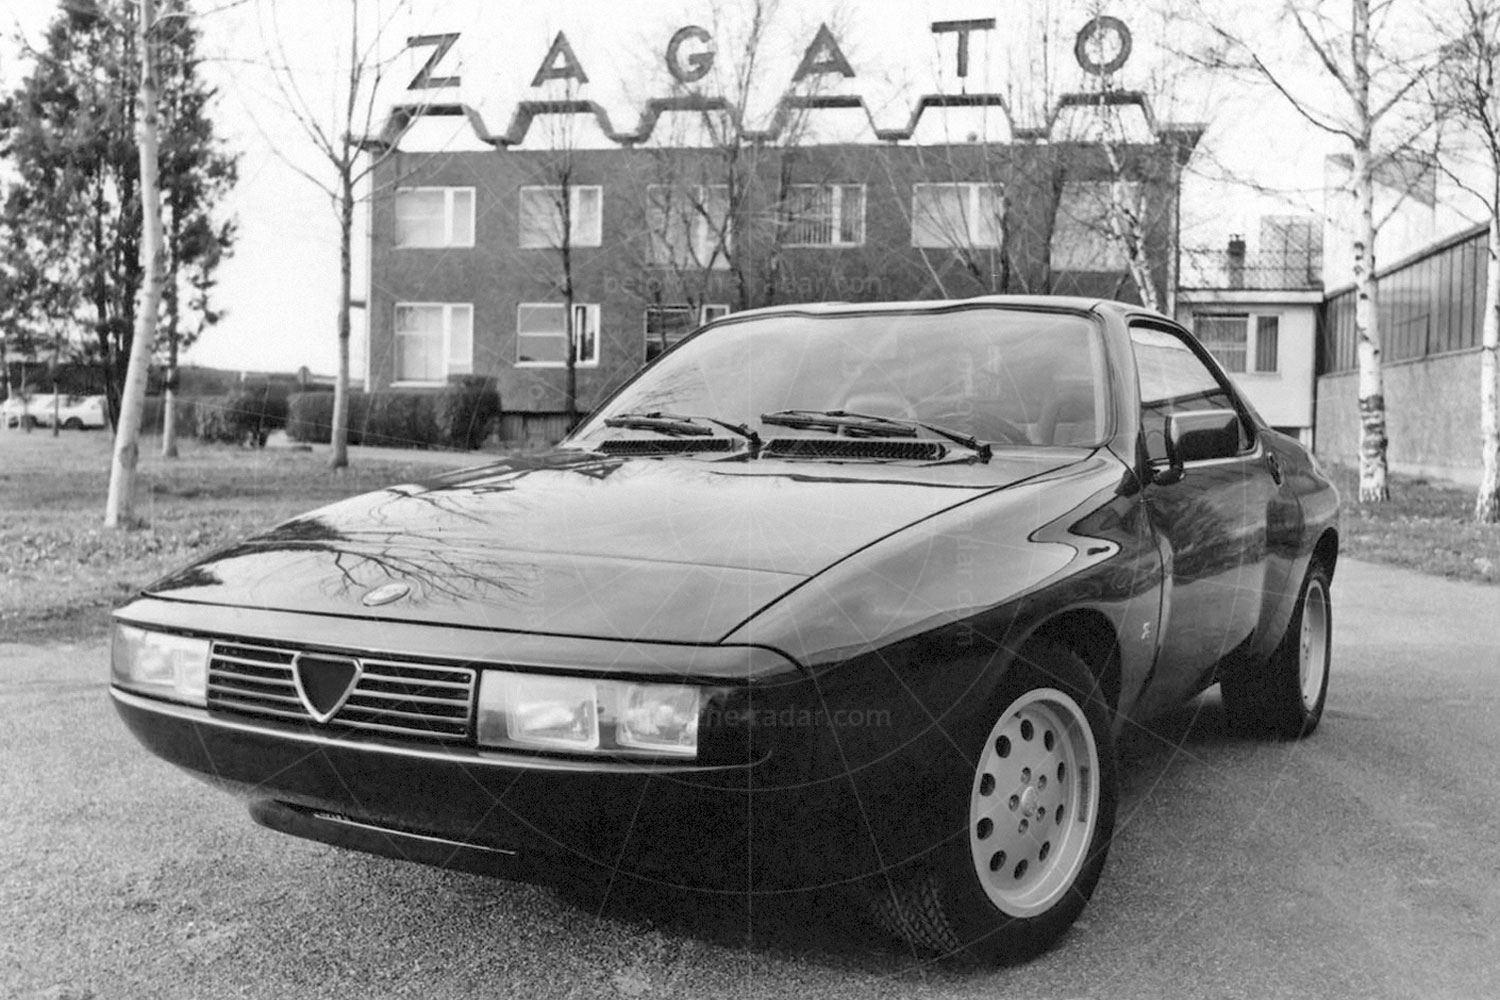 Alfa Romeo Zagato Zeta 6 Pic: Magic Car Pics | 